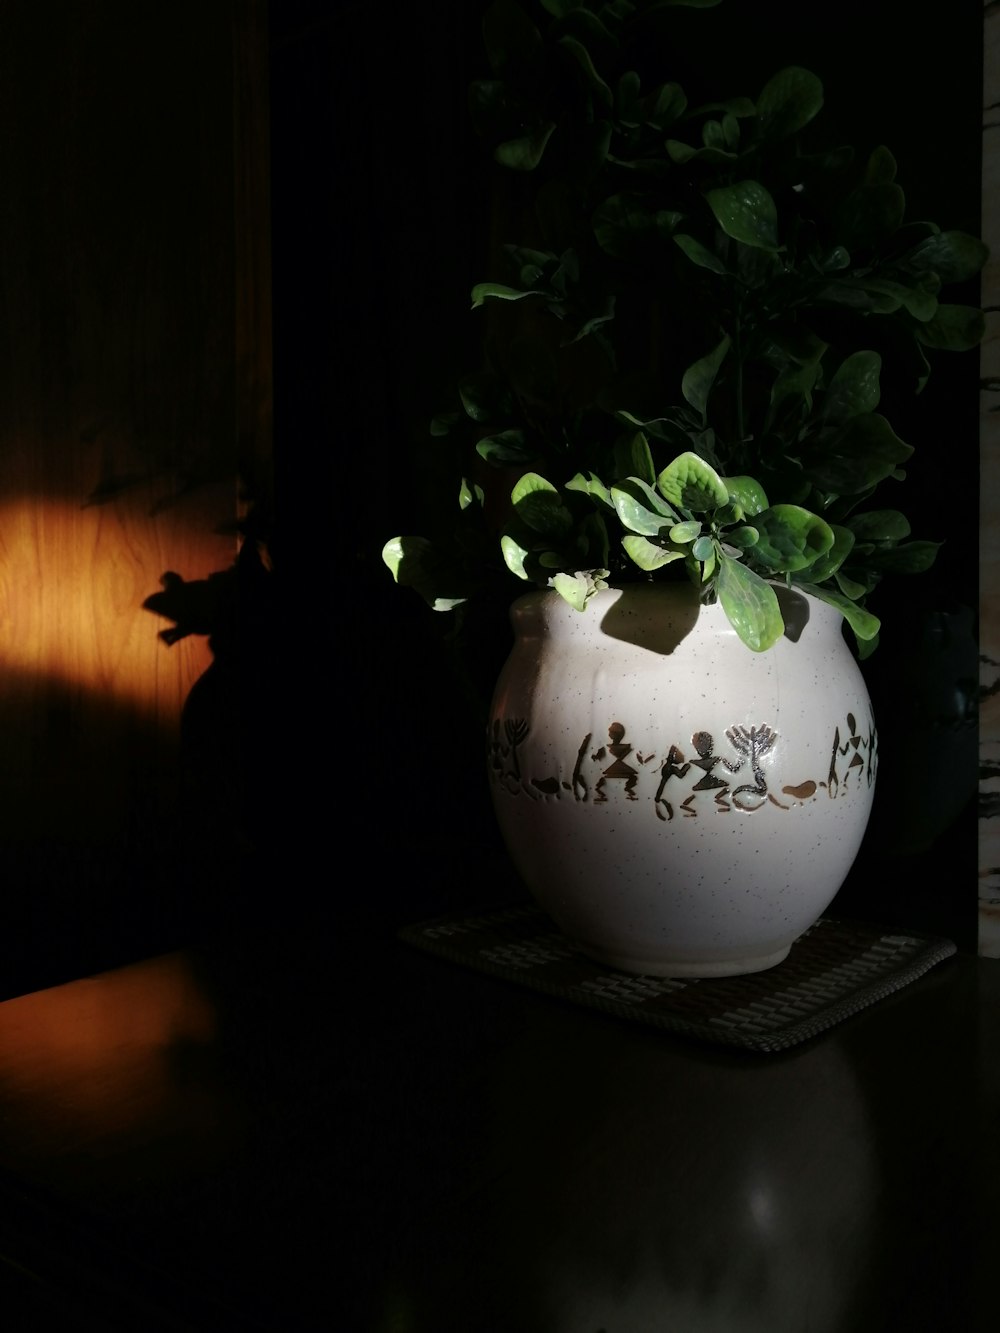 green plant on white ceramic vase